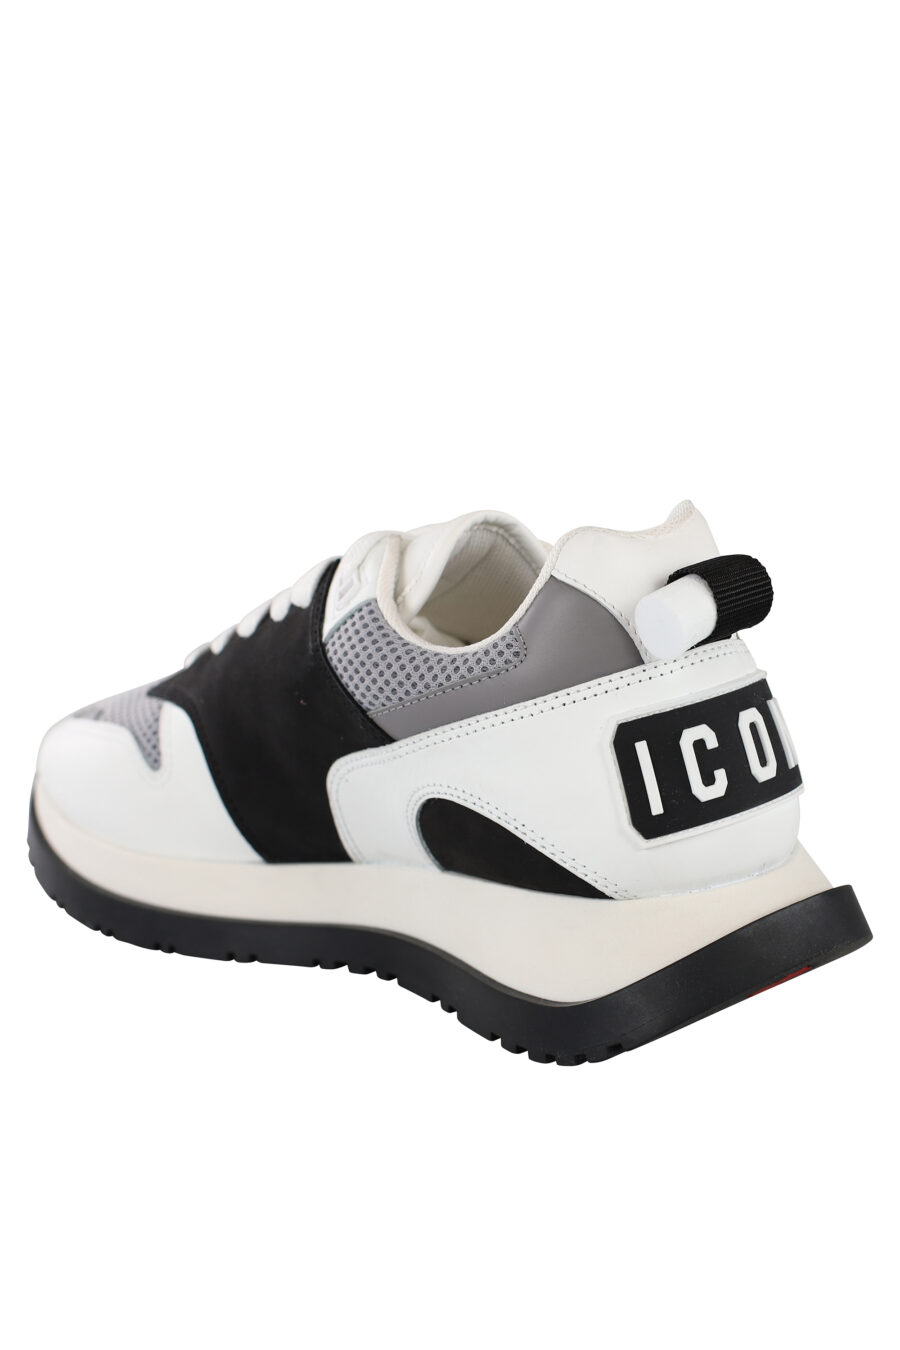 Zapatillas blancas con negro y detalle gris con logo en suela - IMG 6890